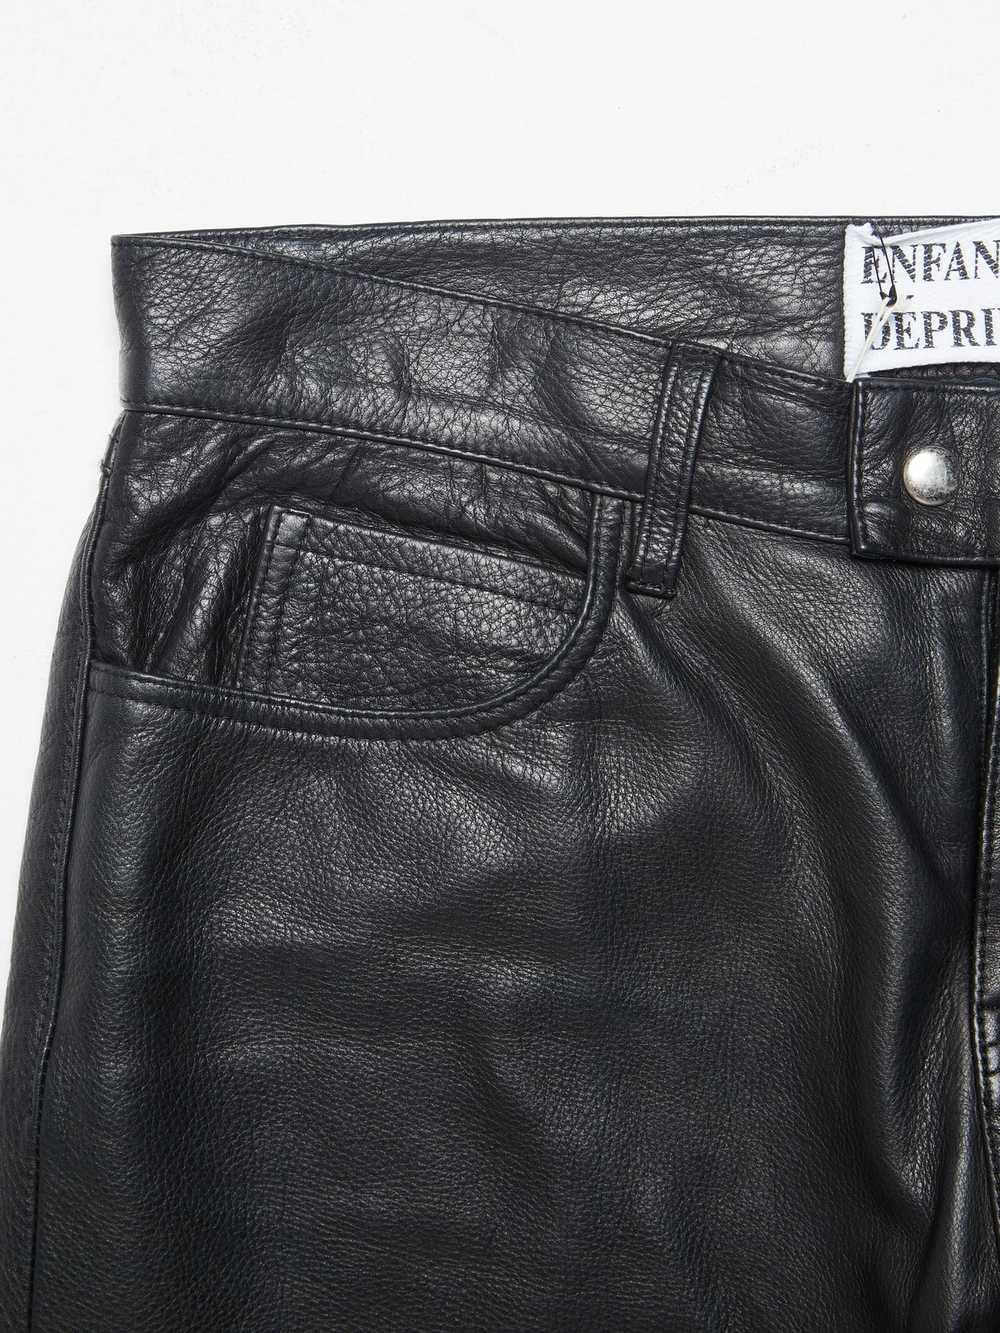 Enfants Riches Deprimes Black Leather Pants - image 5